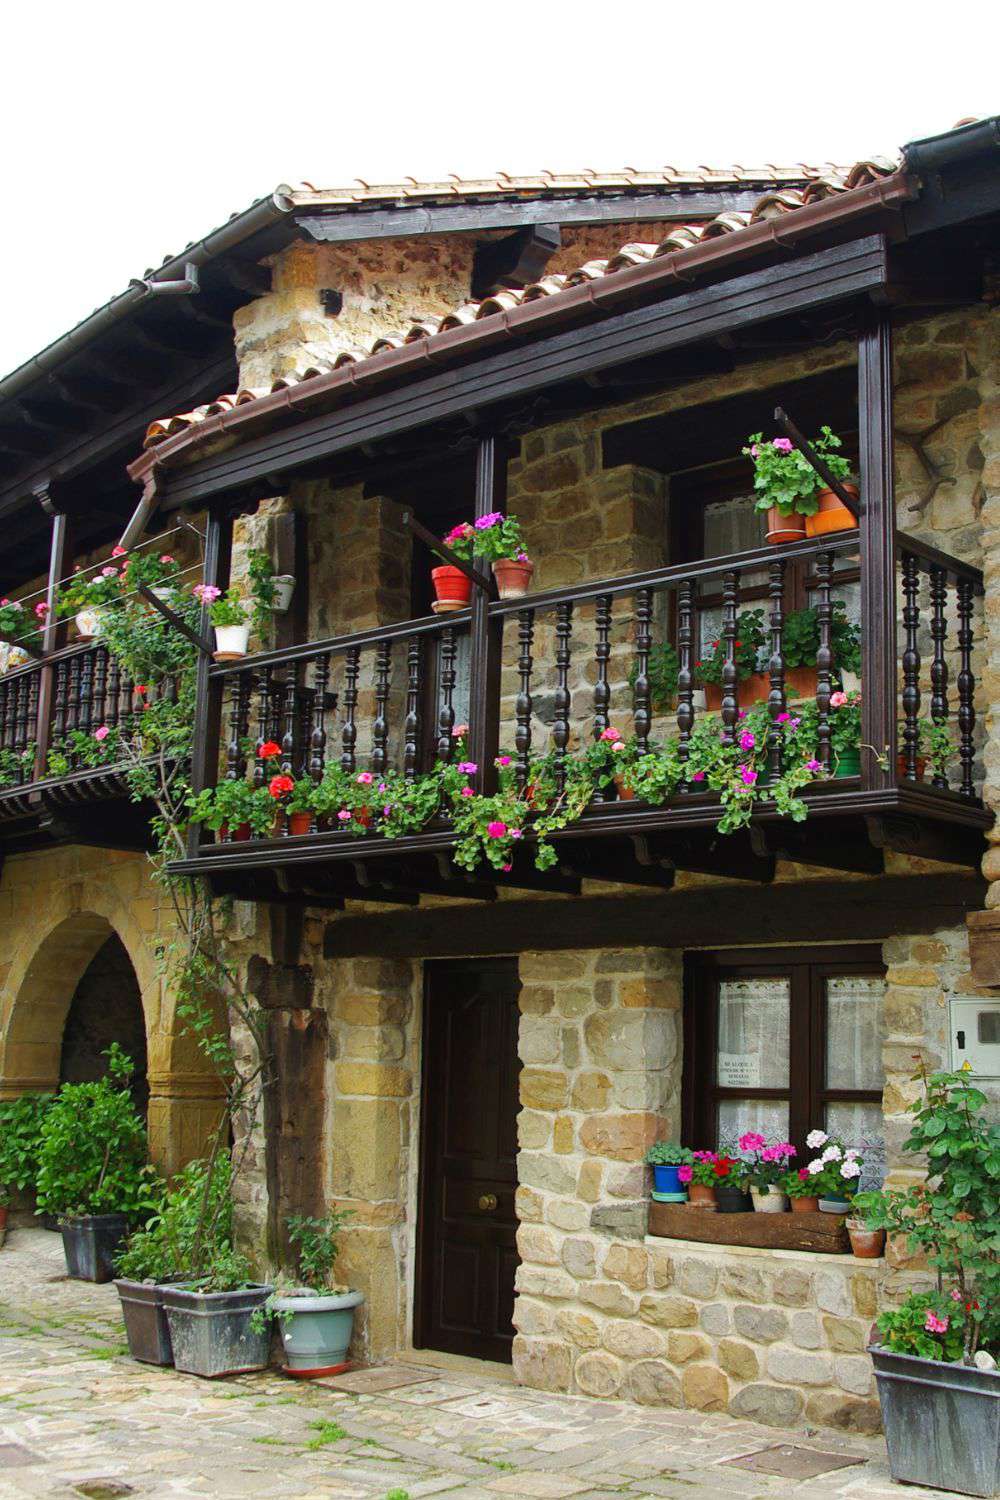 pueblos bonitos de asturias barcena mayor cantabria